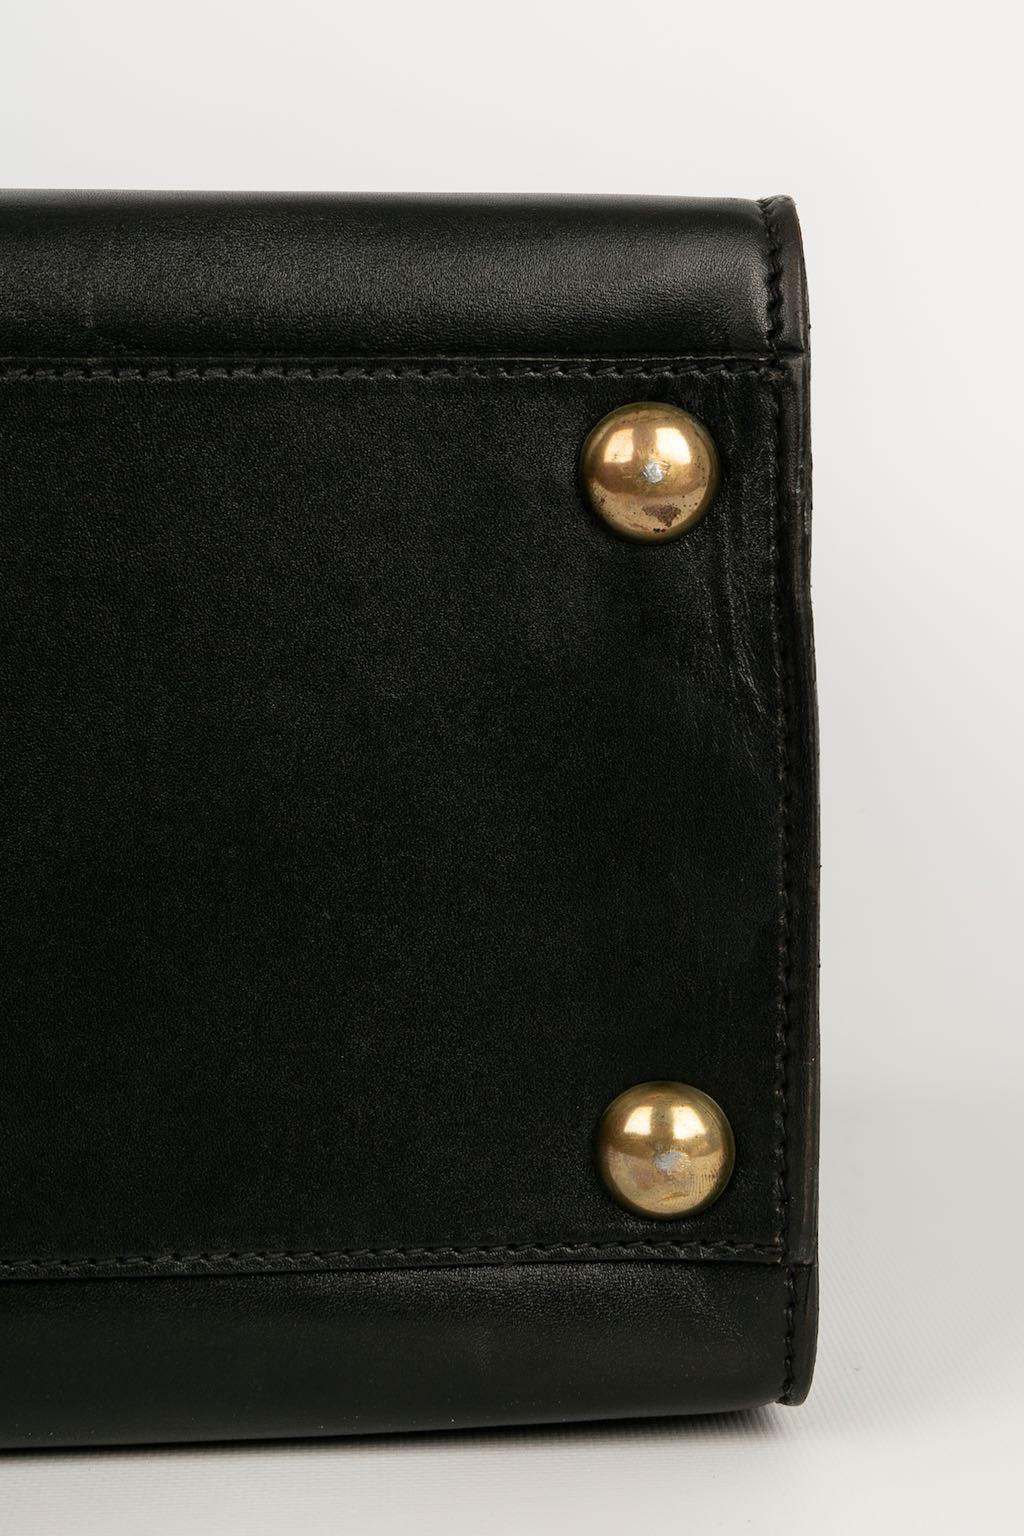 Goyard Black Leather Briefcase 3